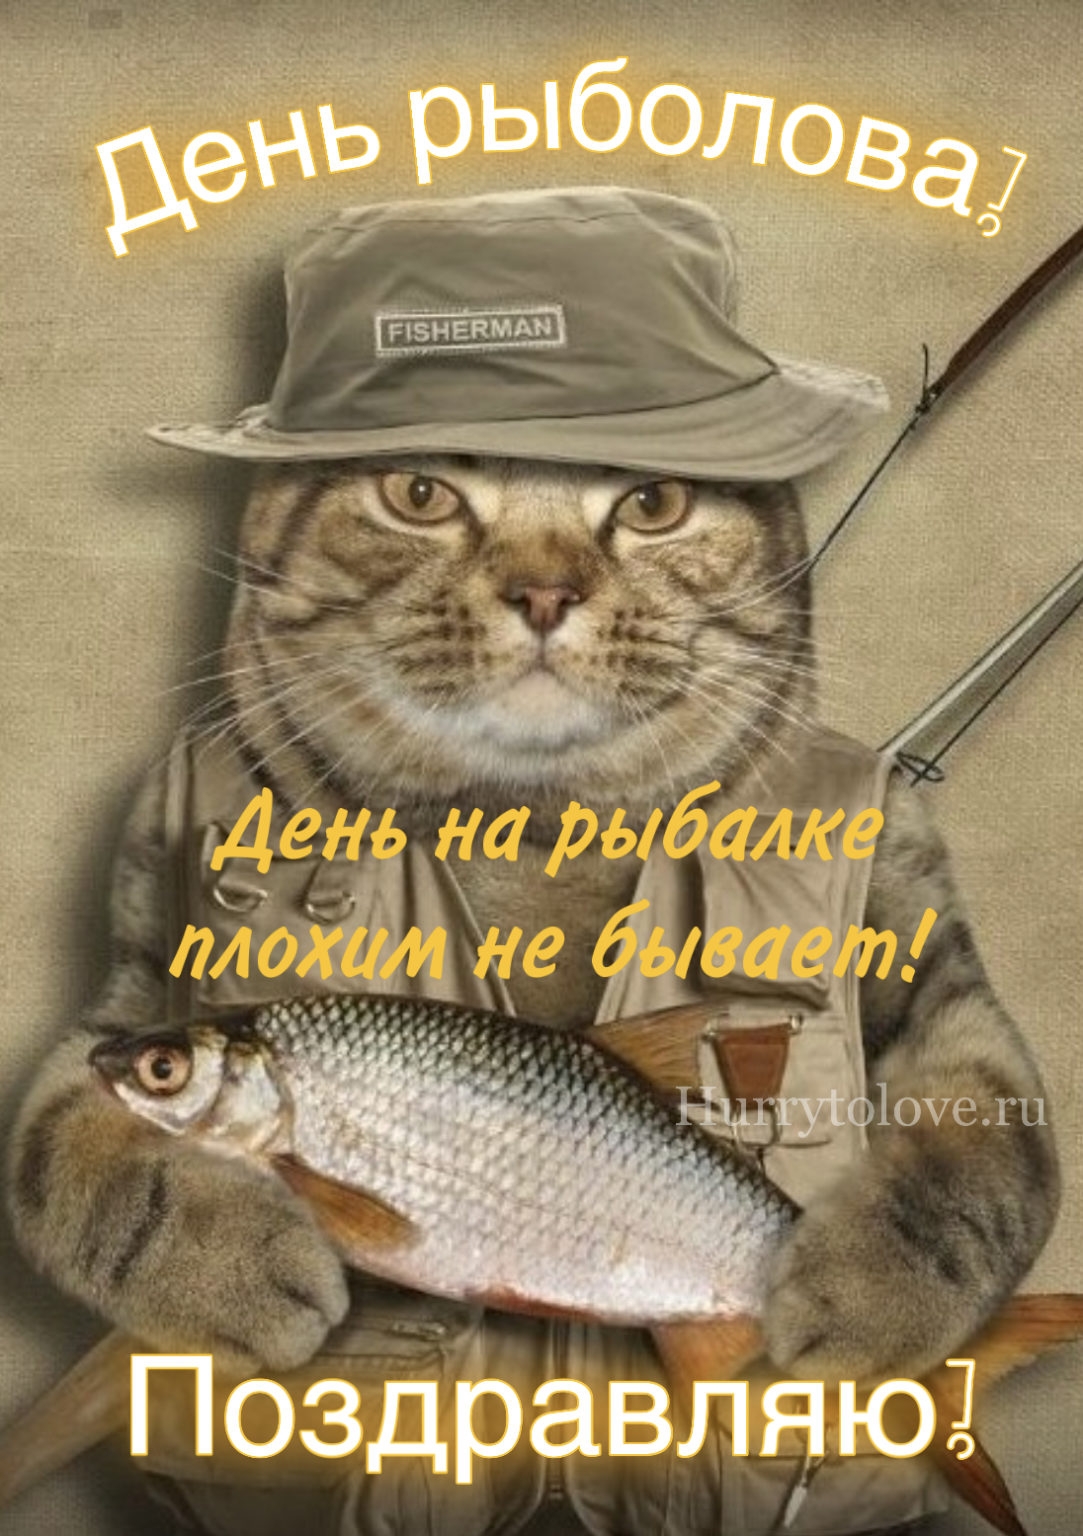 День рыболова